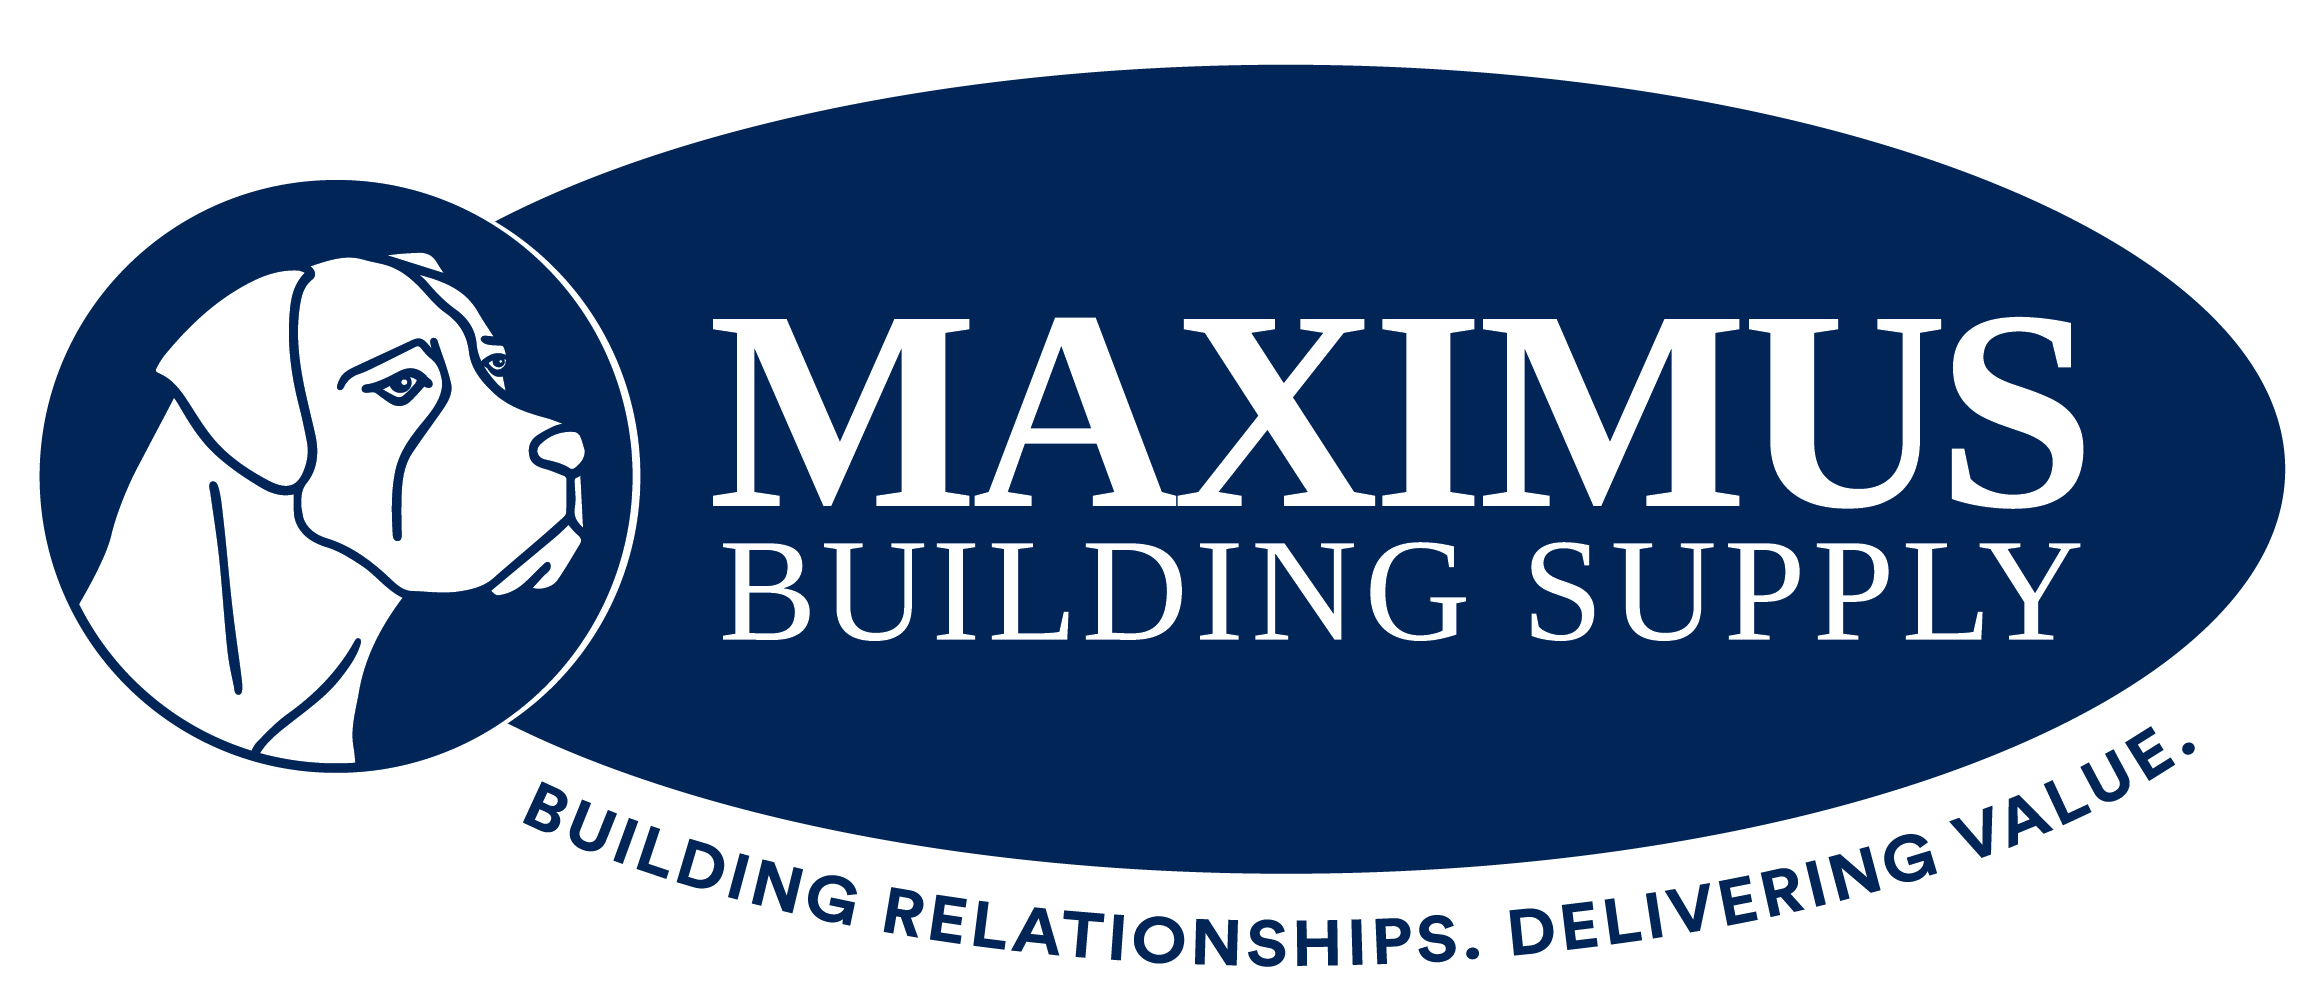 Maximus Building Supply